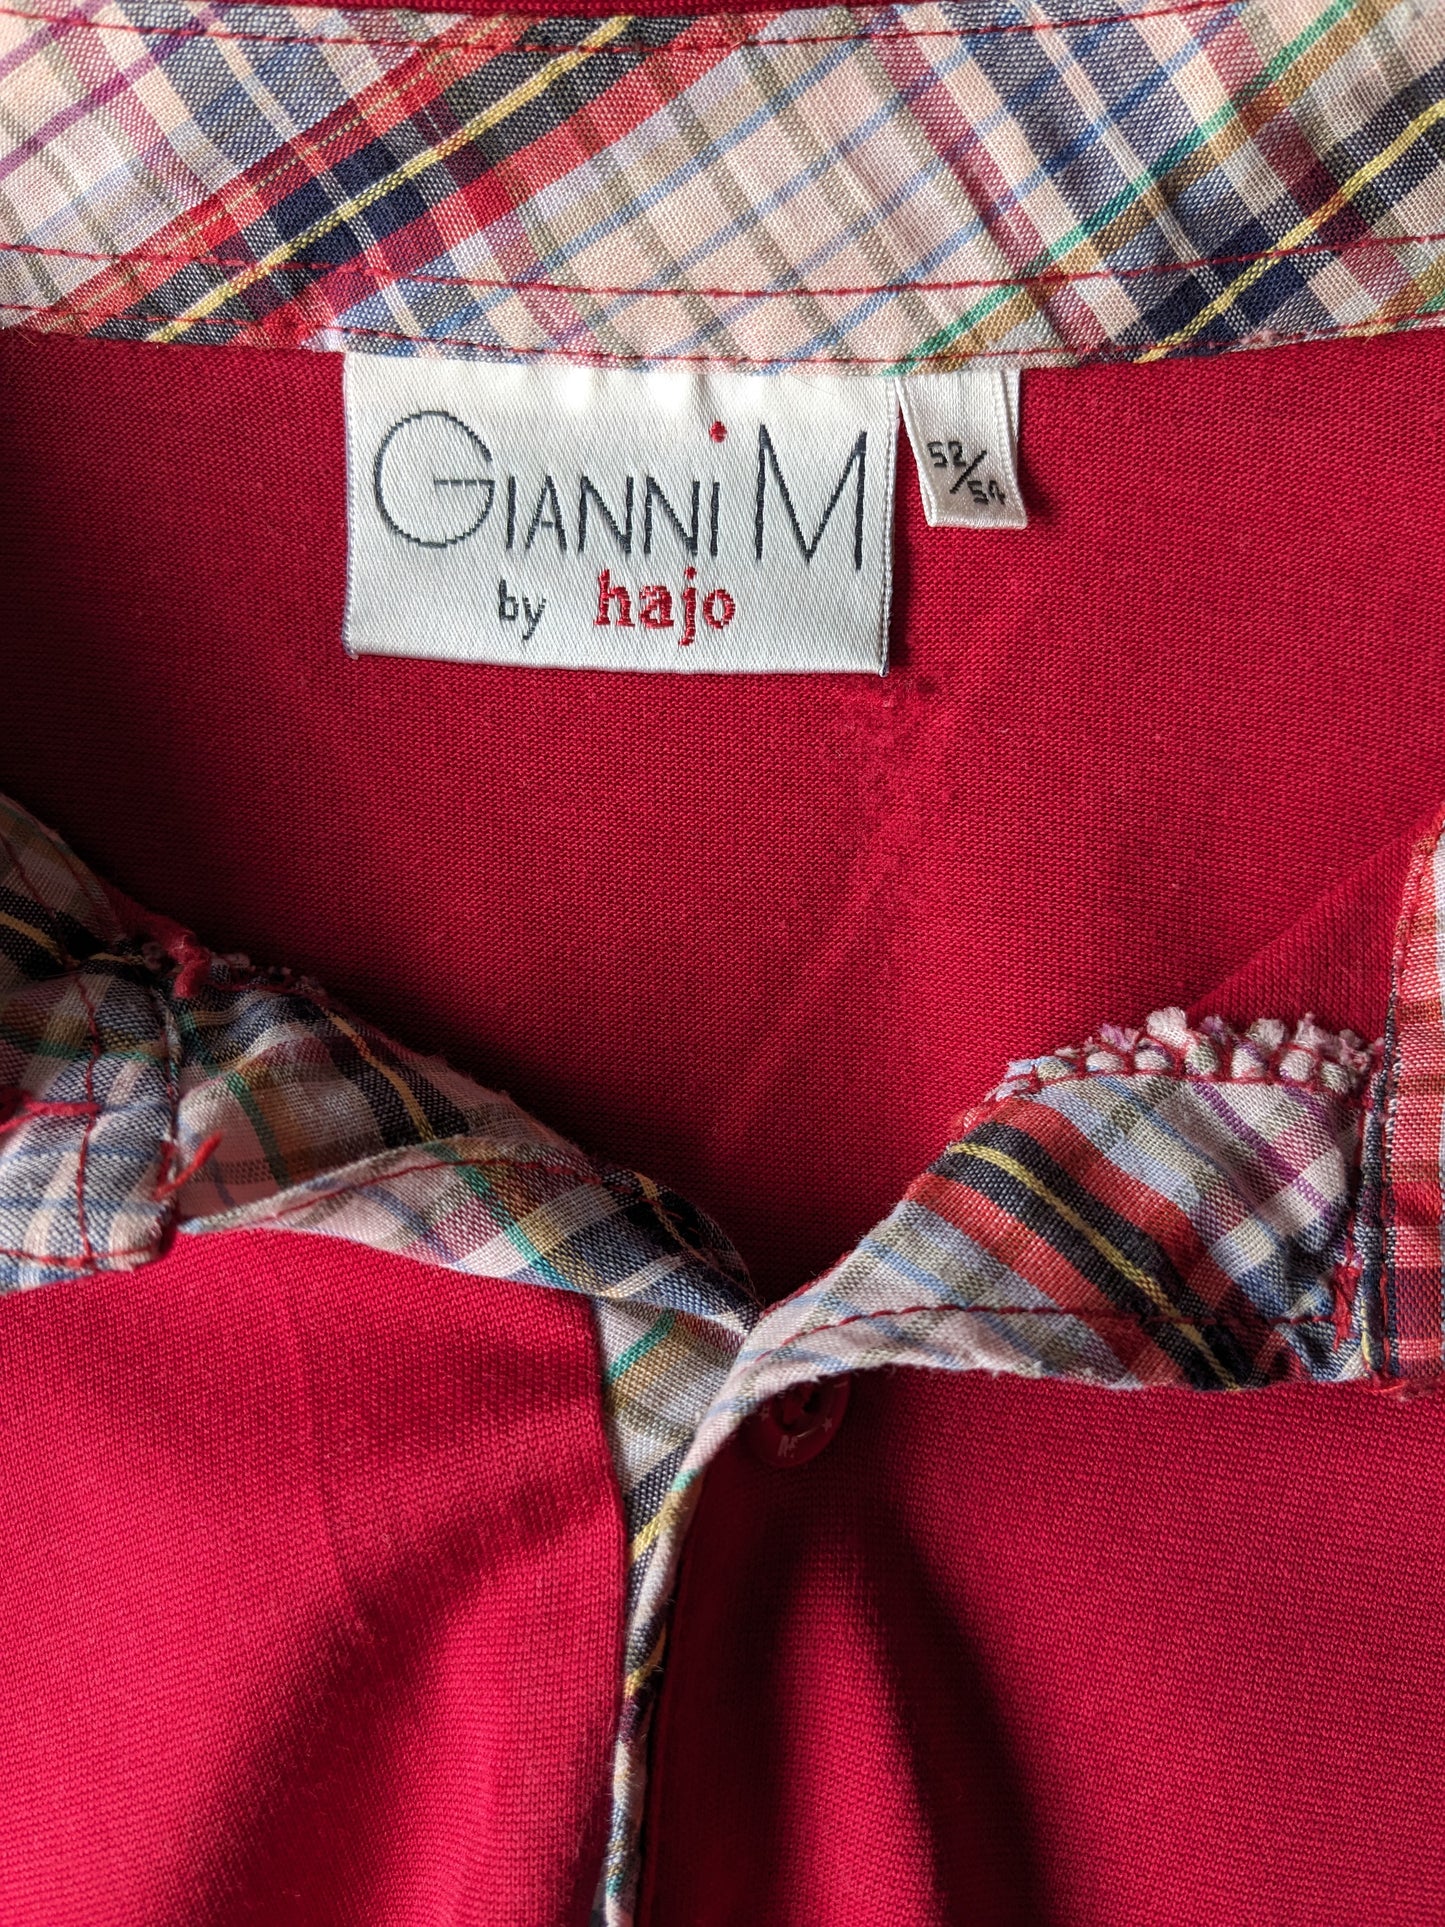 Gianni M von Hajo Vintage Polo mit Gummiband. Rot gefärbt. Größe L / XL.